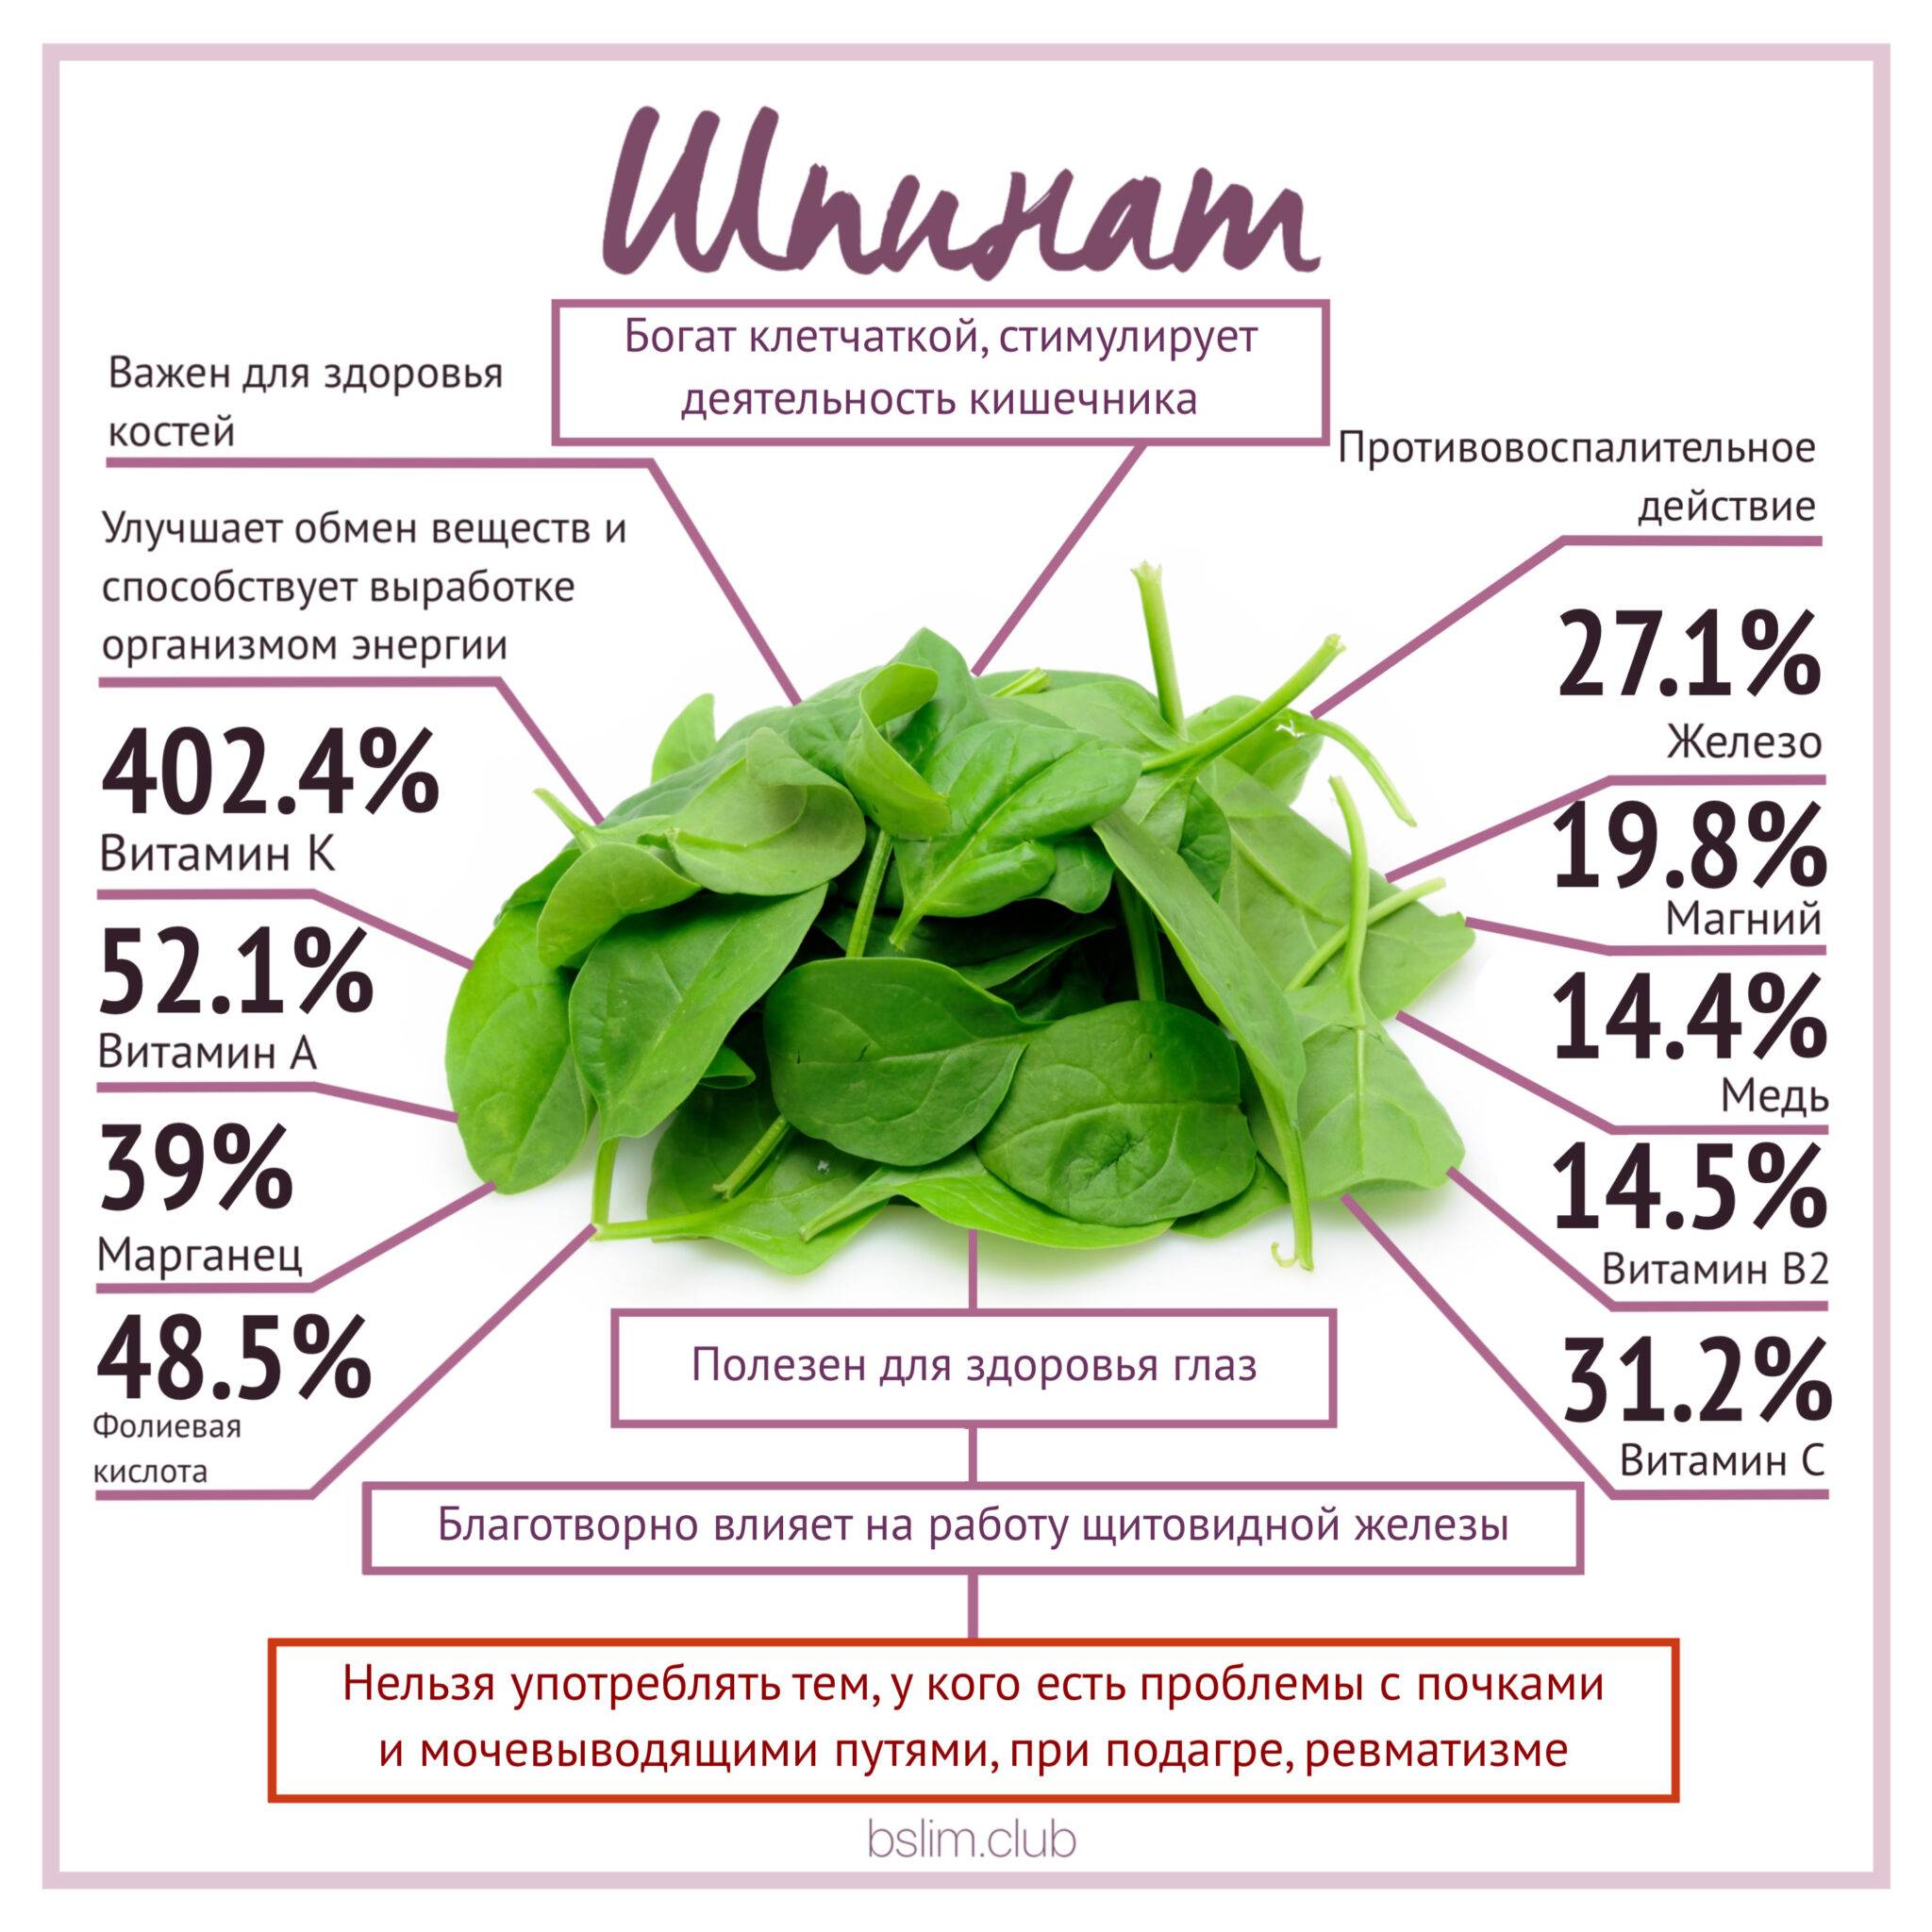 Шпинат: 29 полезных свойств, польза и вред шпината для здоровья женщины и мужчины